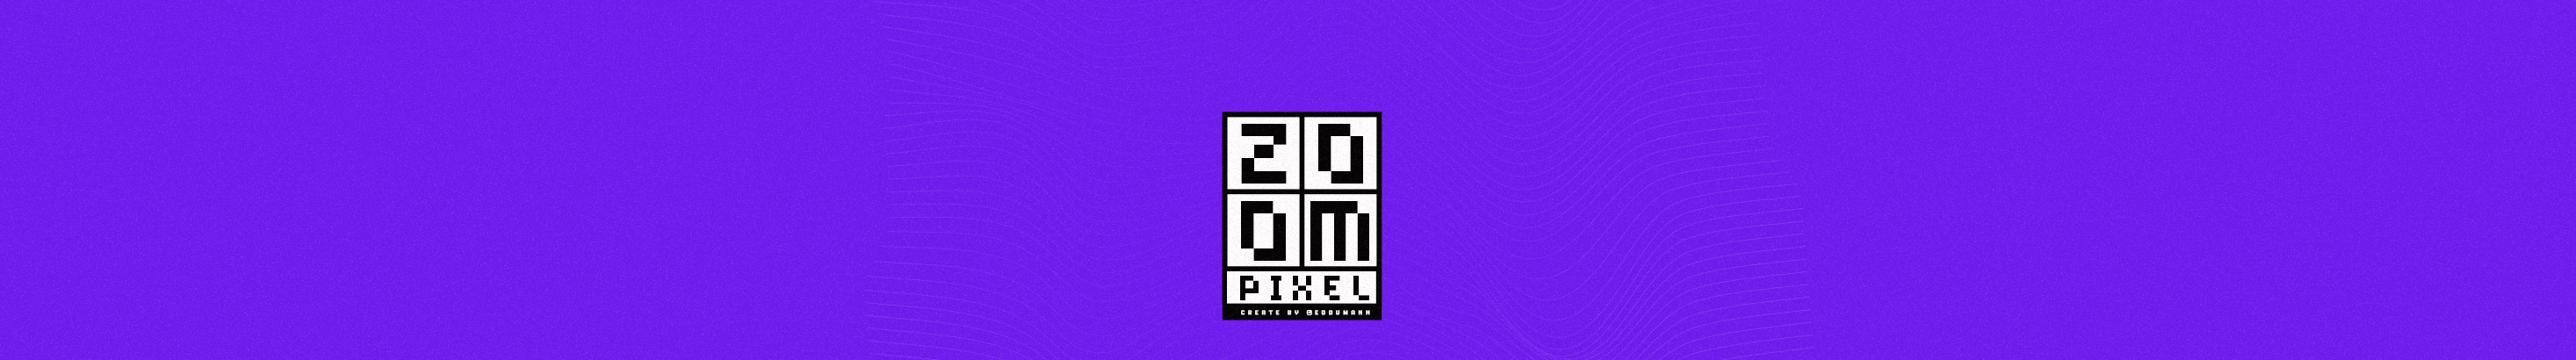 Zoom Pixels profilbanner